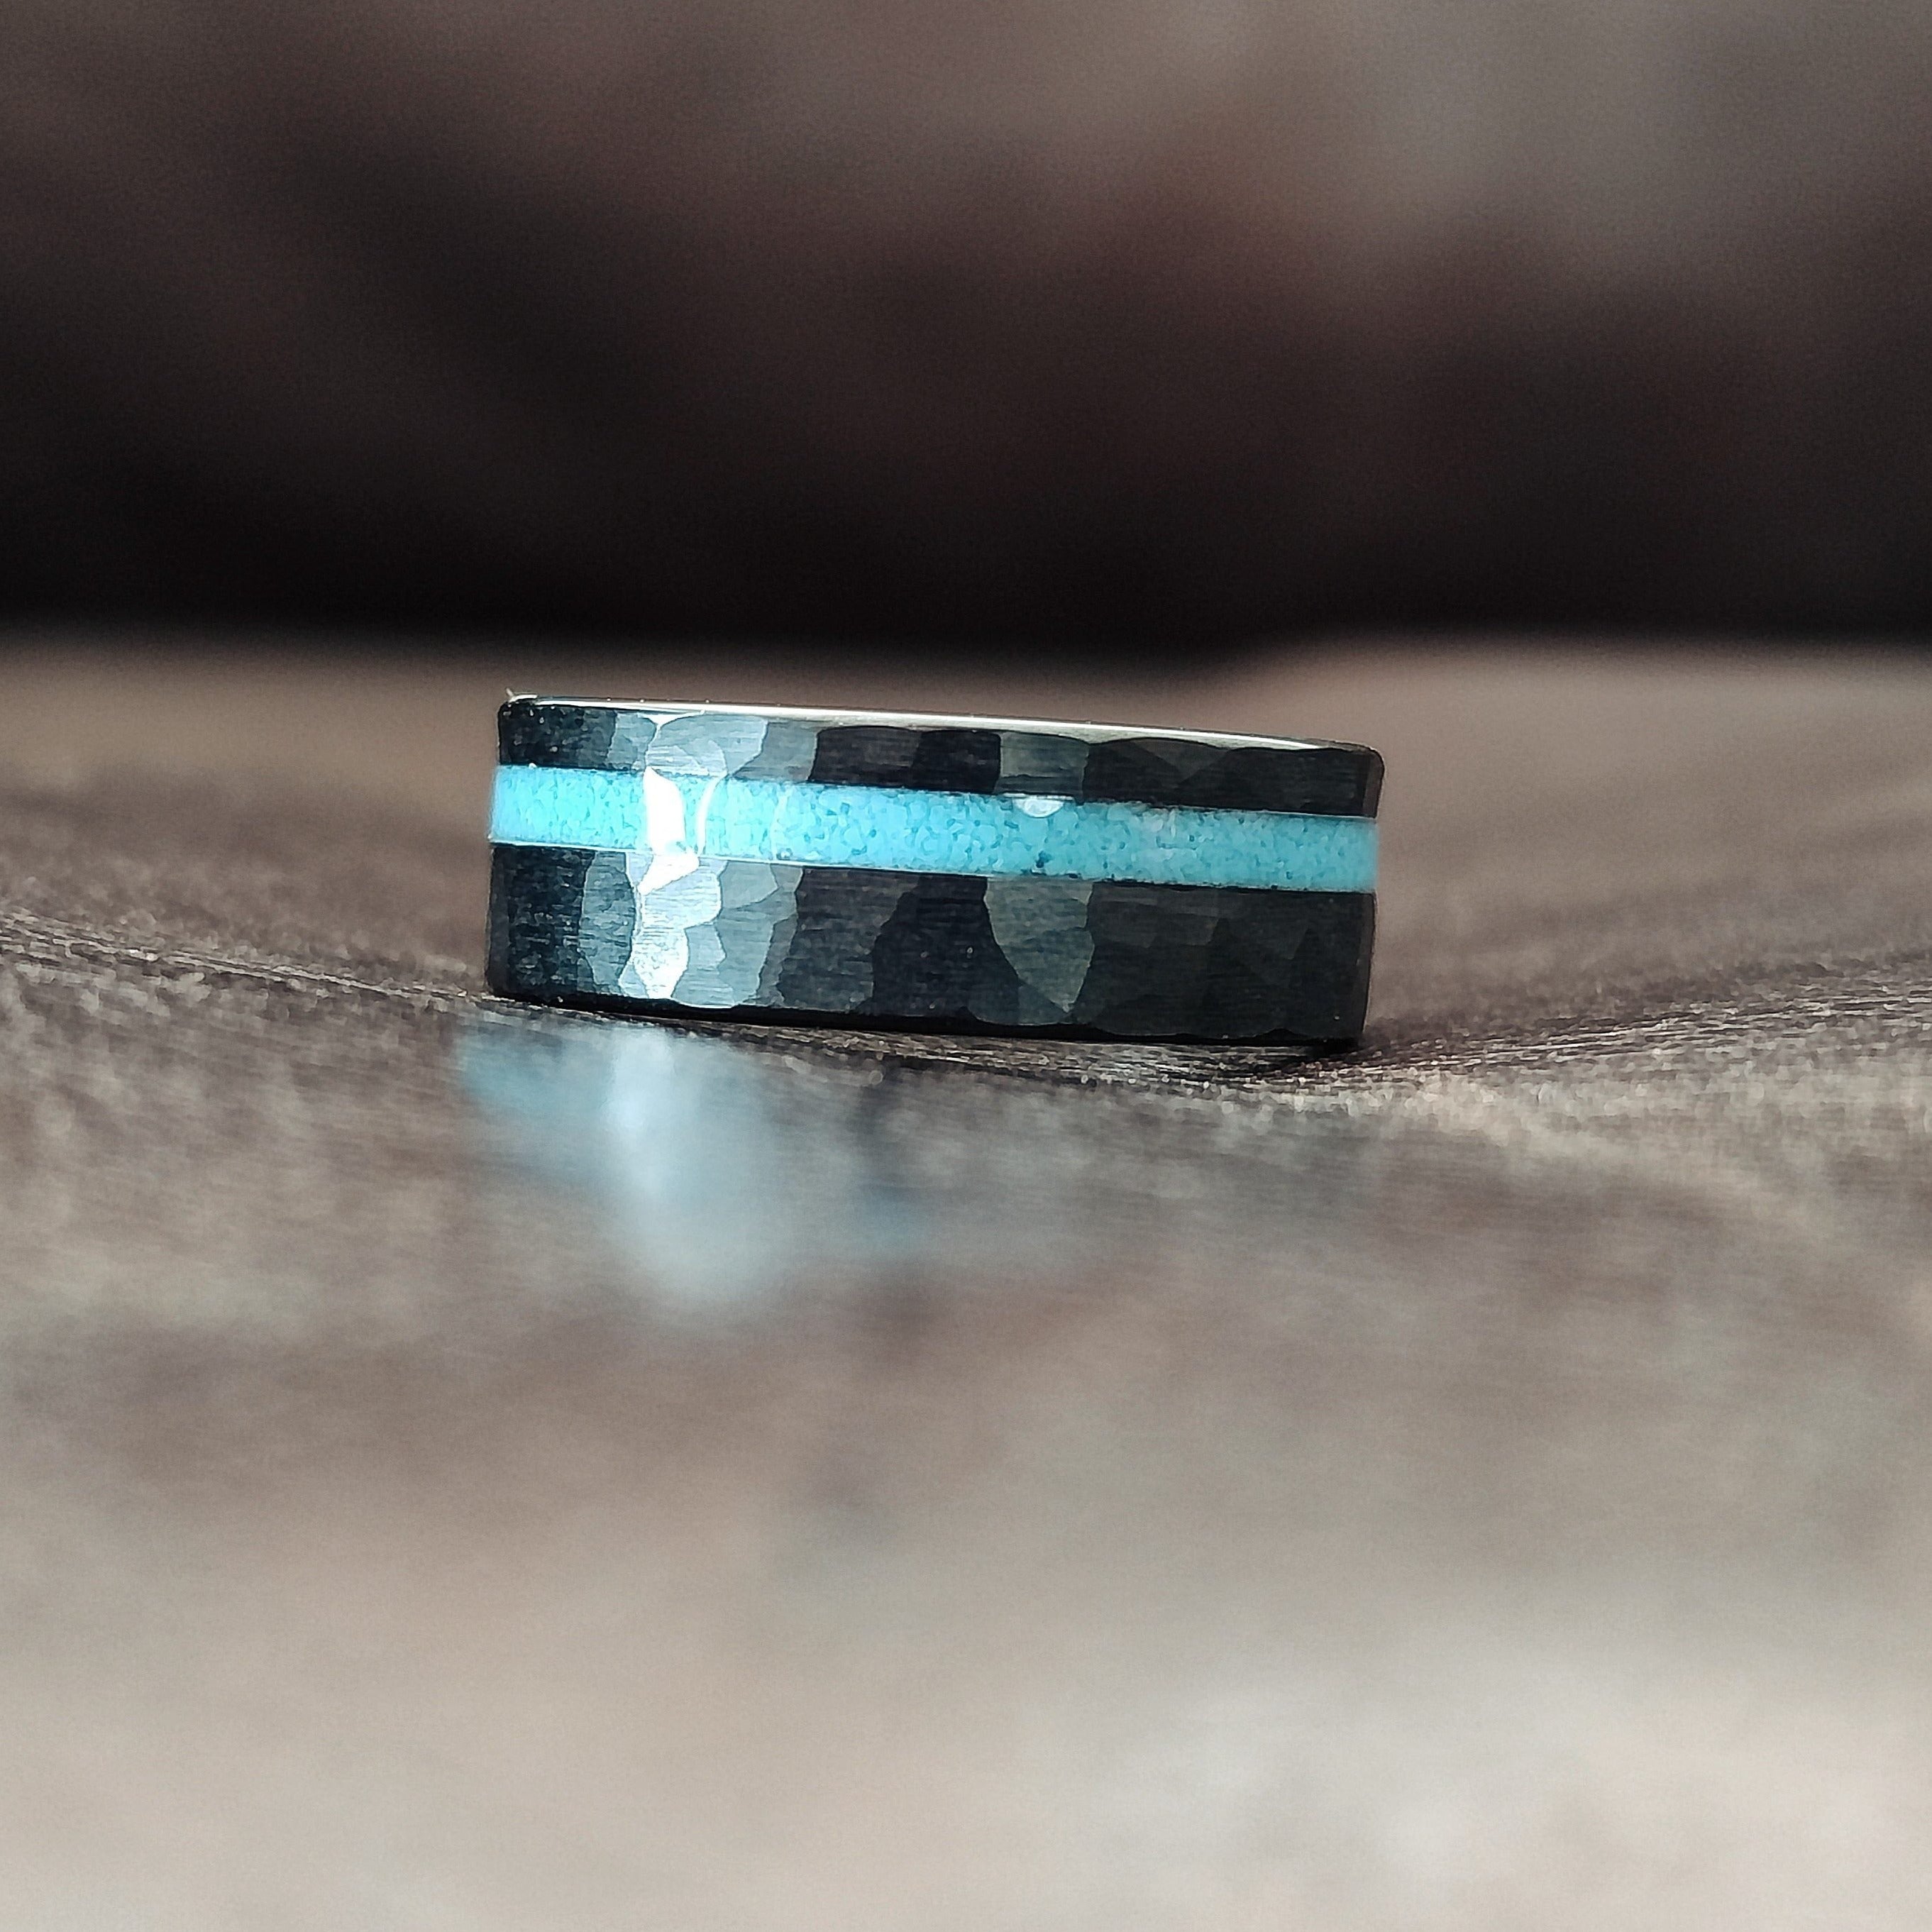 Sub Zero - Blue Resin Men's Tungsten Ring (Hammered)